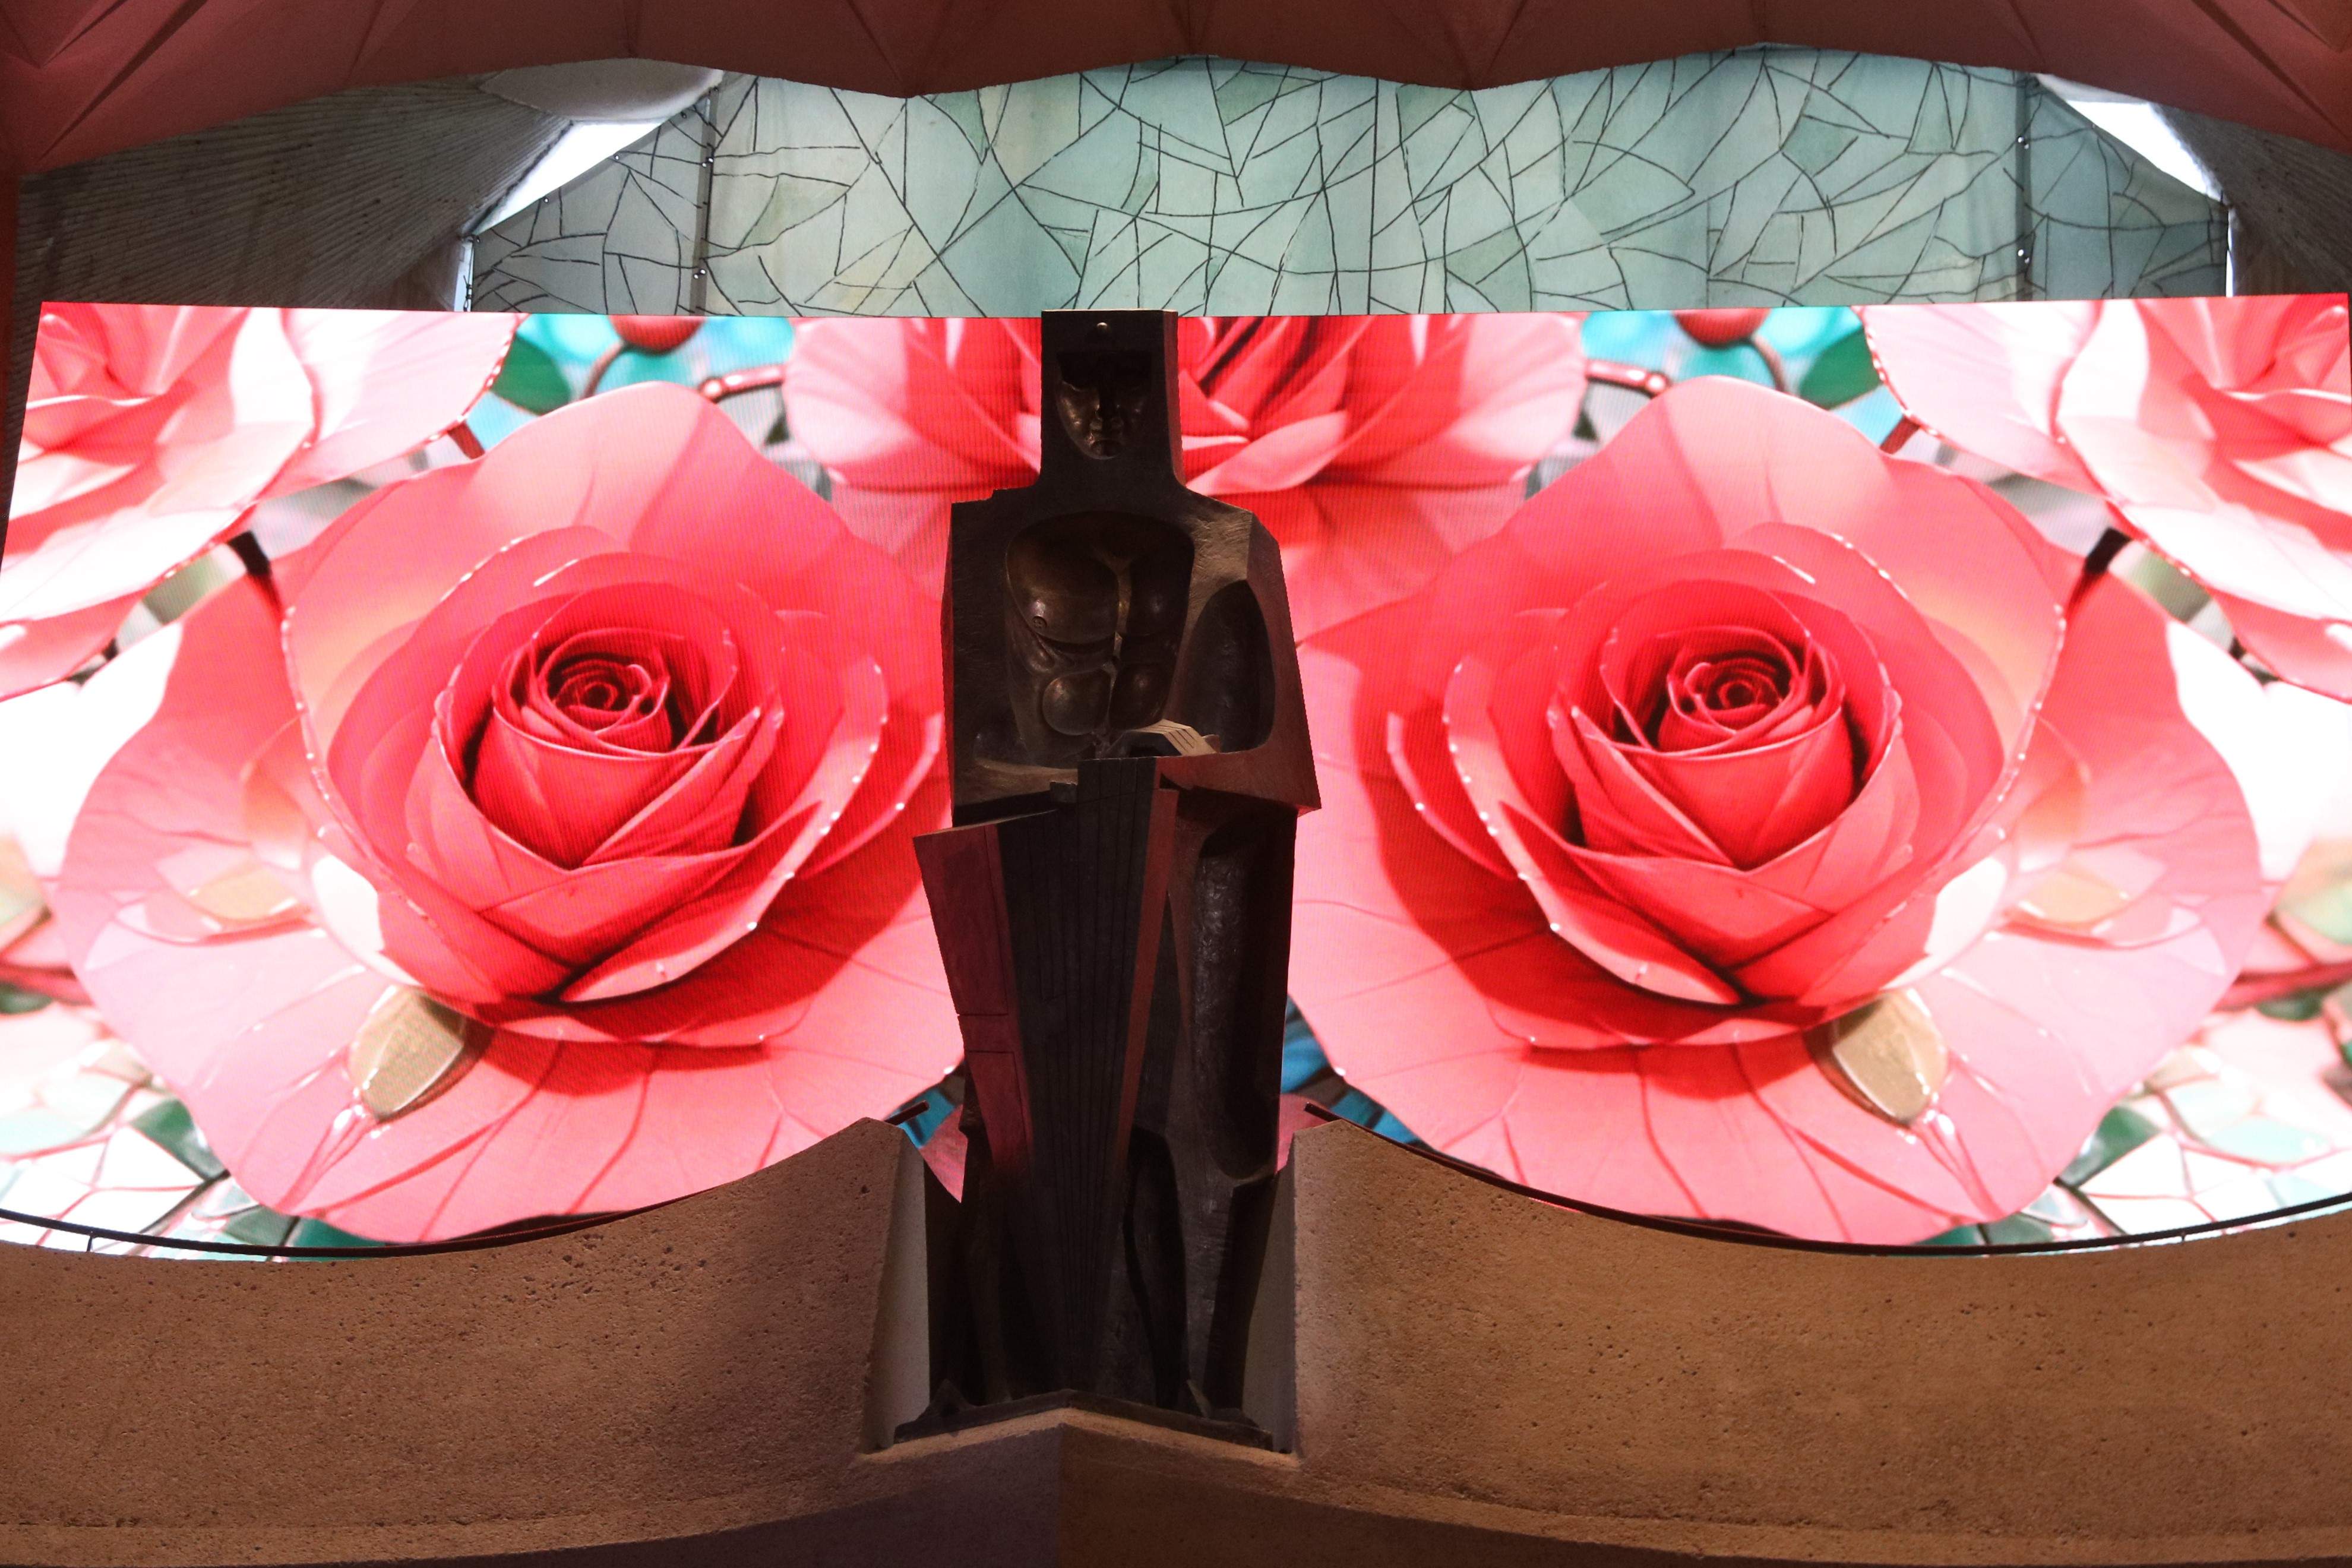 Roses inspirades en l'obra de Gaudí: nova instal·lació amb IA a la Sagrada Família